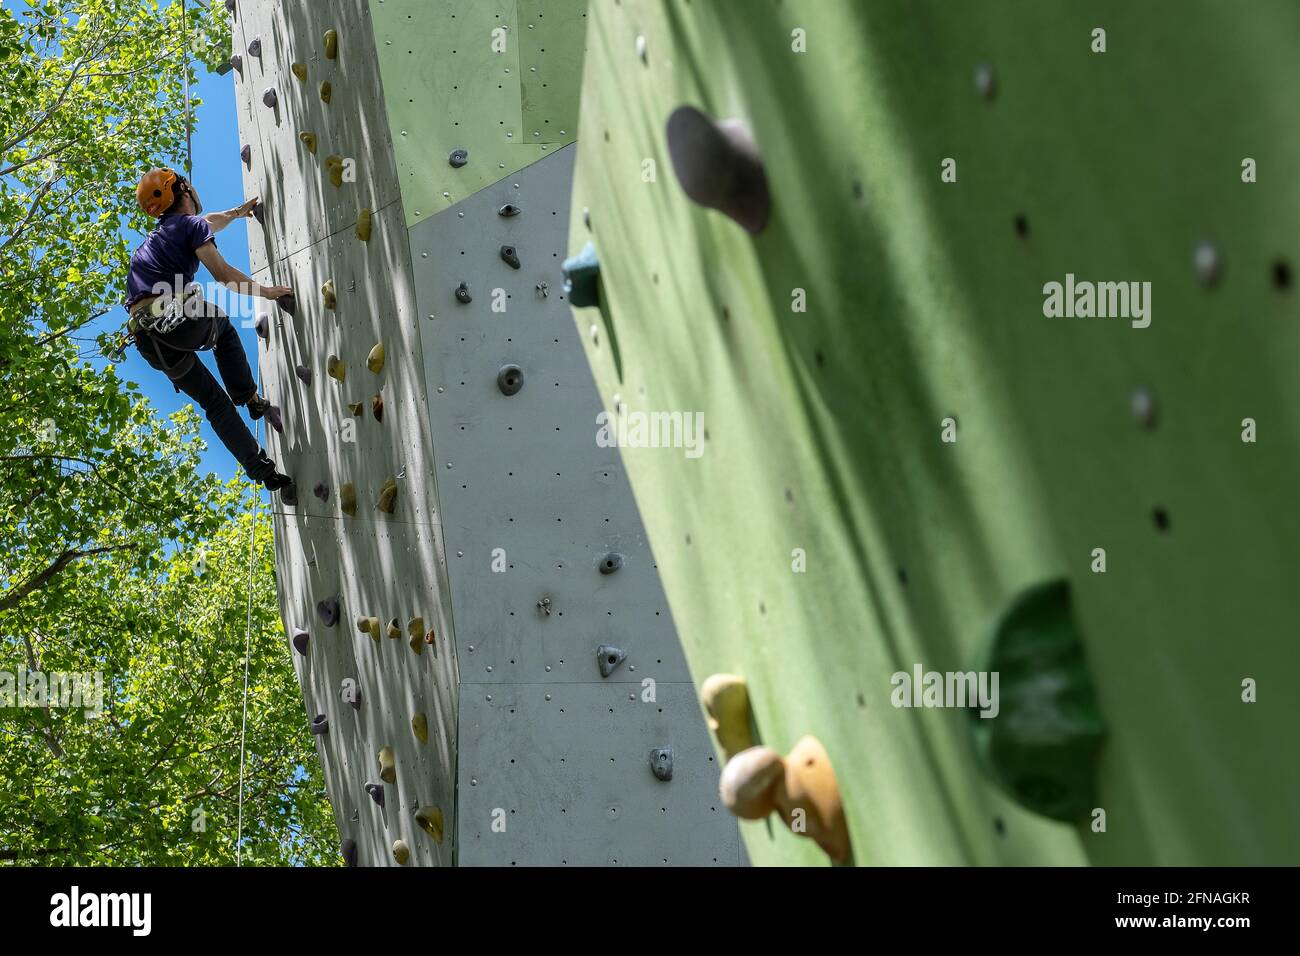 Homme grimpant, sur un mur d'escalade artificiel pour l'escalade en plein air, Parc Olimpic del Segre, Parc olympique de Segre, la Seu d'Urgell, Lleida, Catalogne, Espagne Banque D'Images